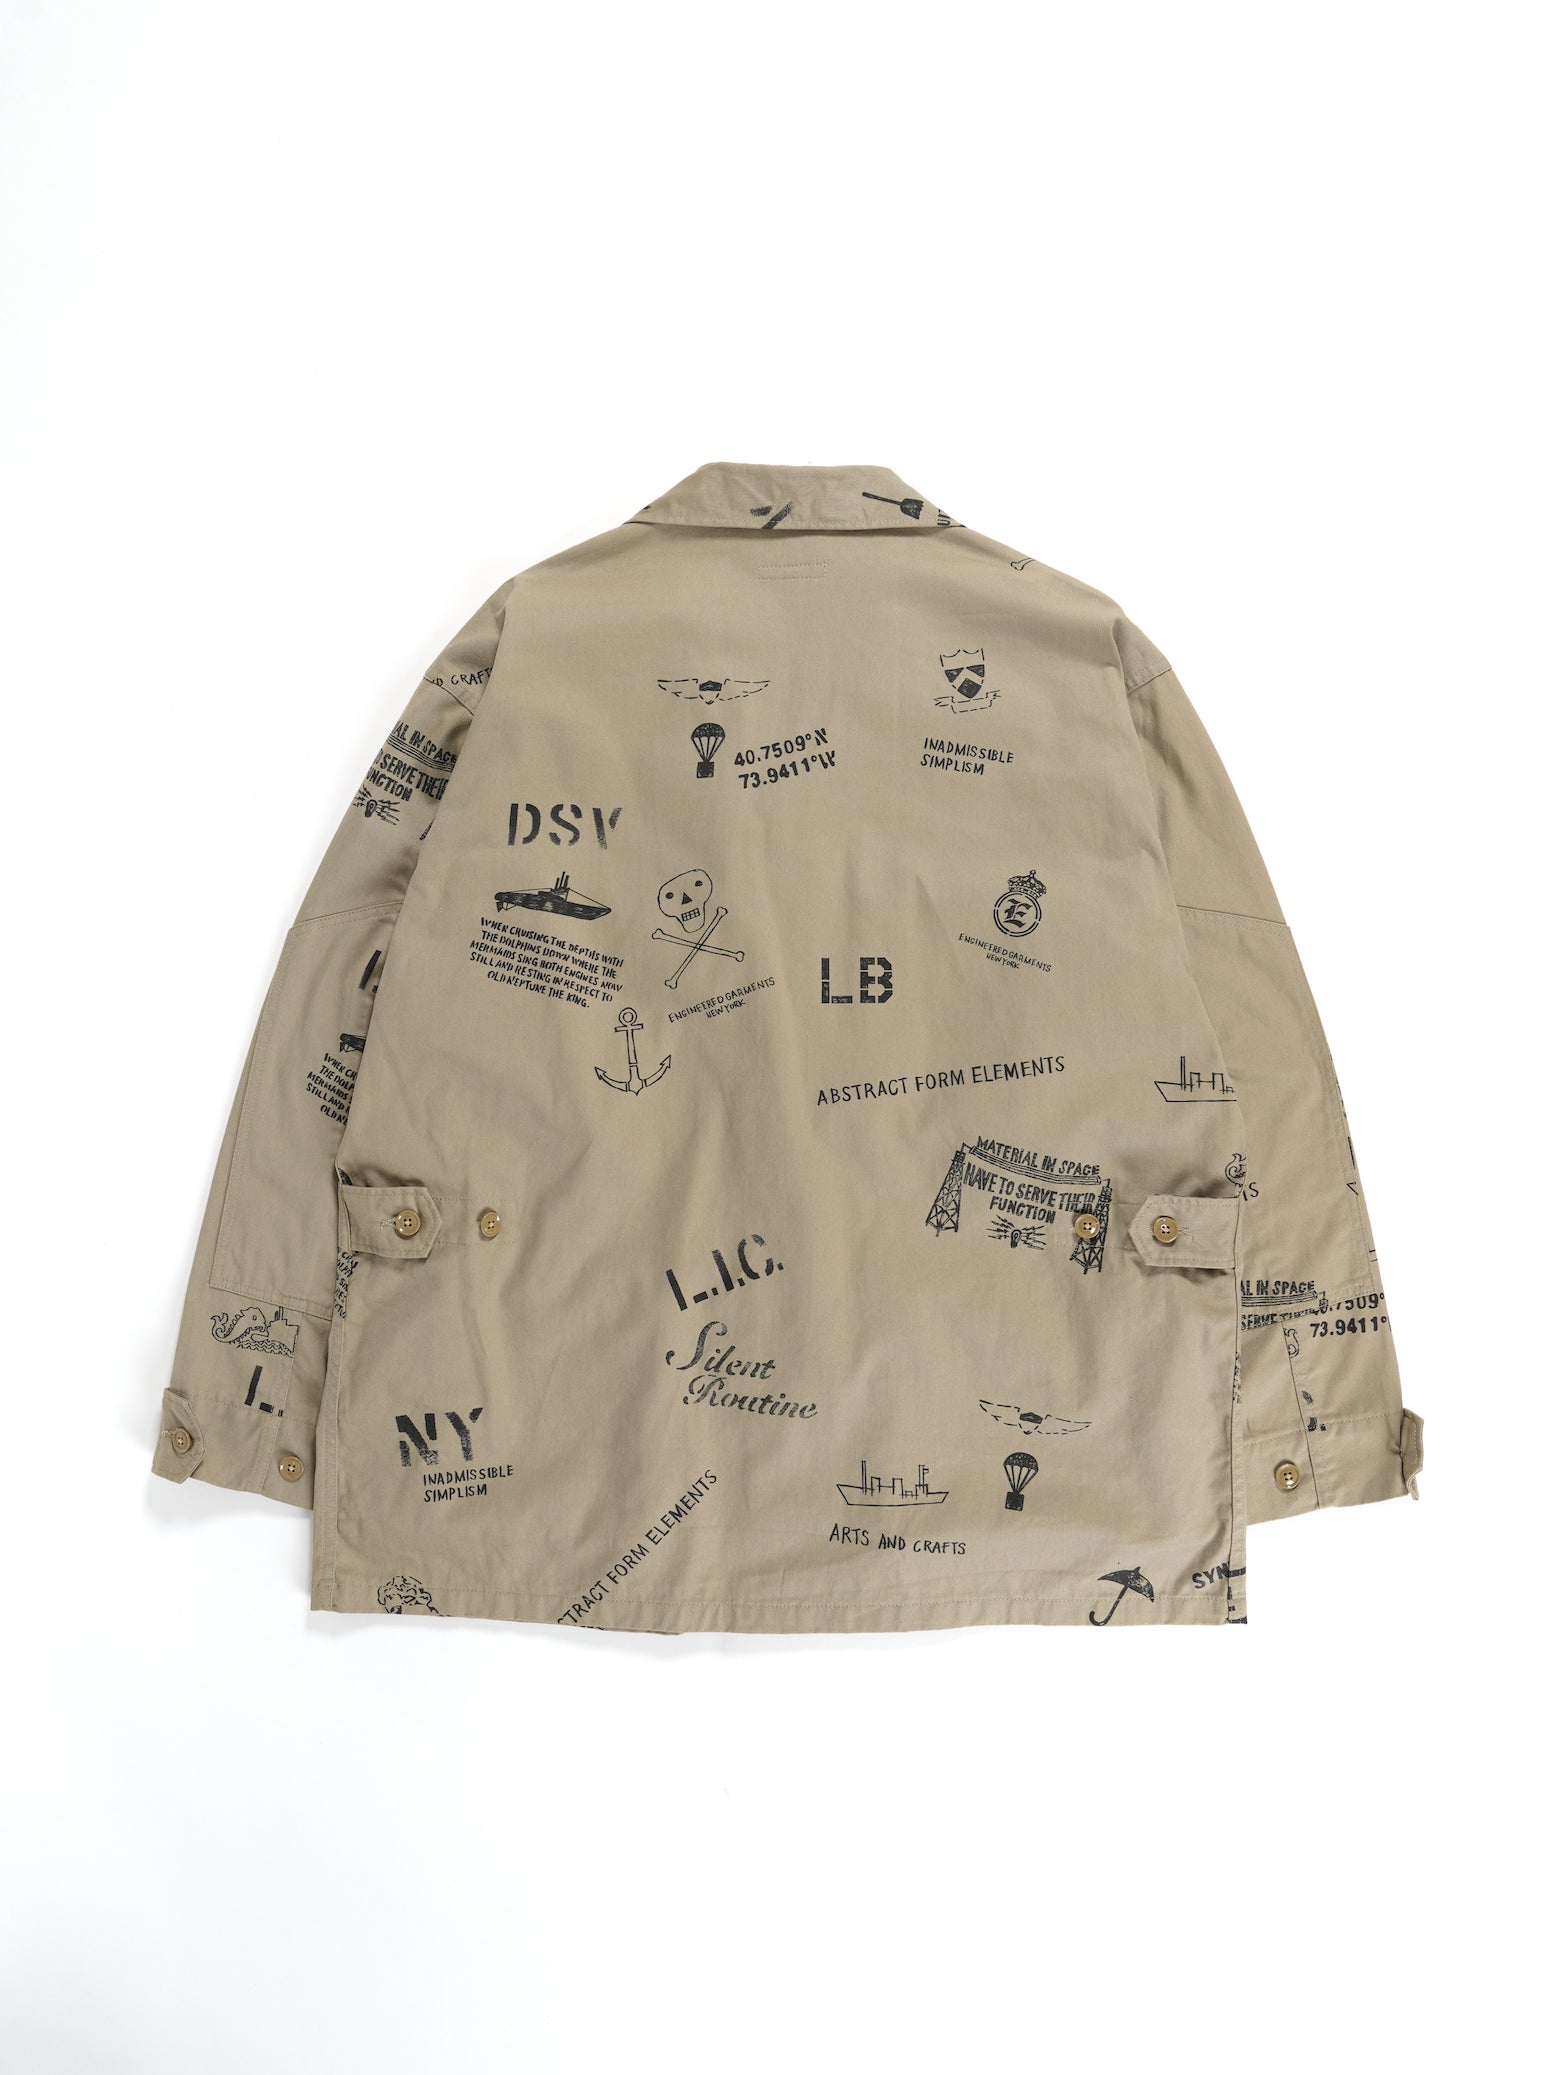 BDU Jacket - Khaki Graffiti Print Flat Twill